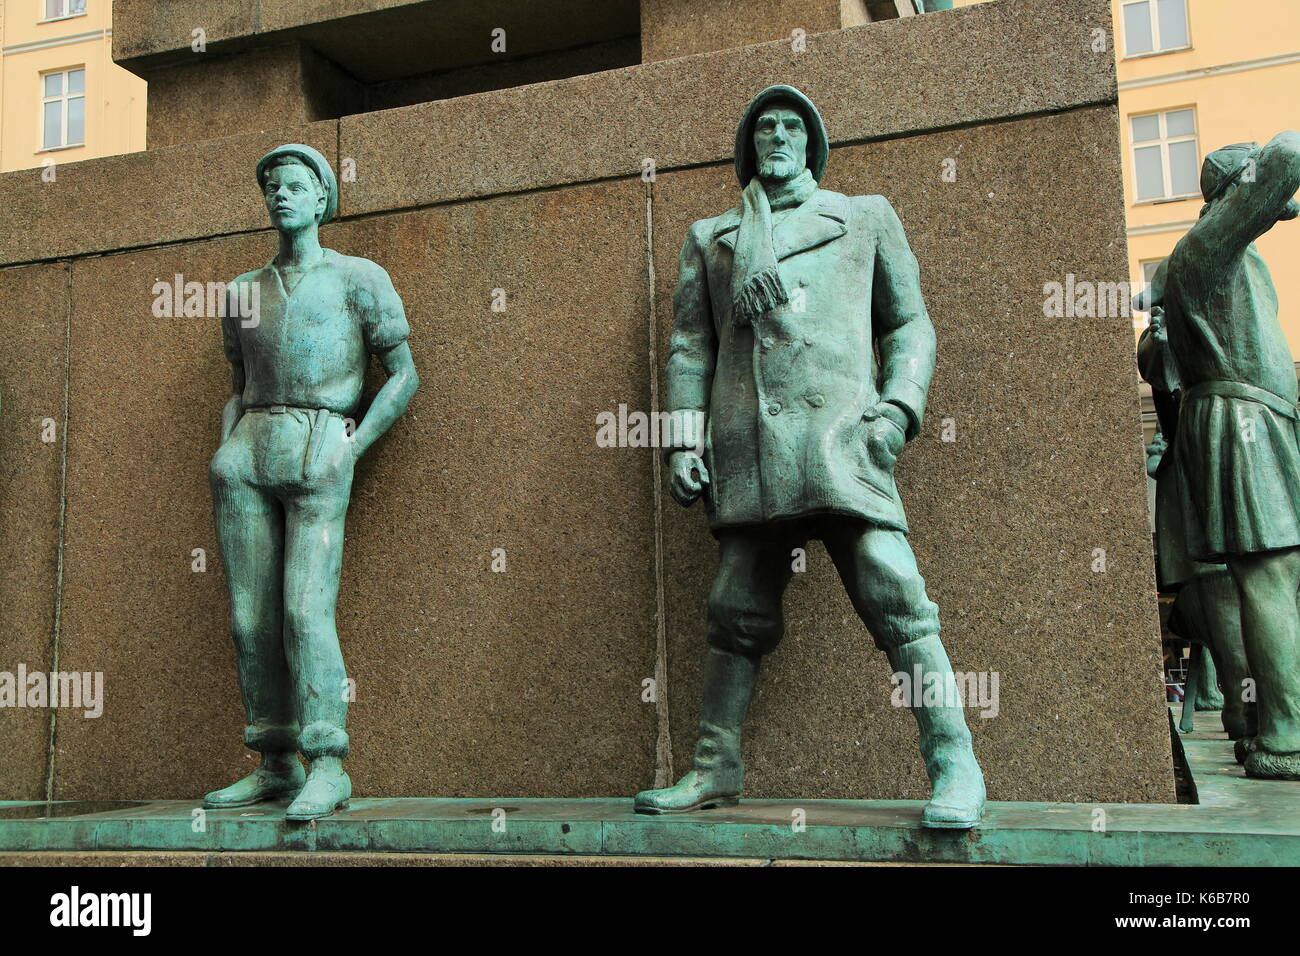 Sjomannsmonumentet, Seaman's Monument, by Dyre Vaa 1950, Torgallmenningen, Bergen, Norway Stock Photo